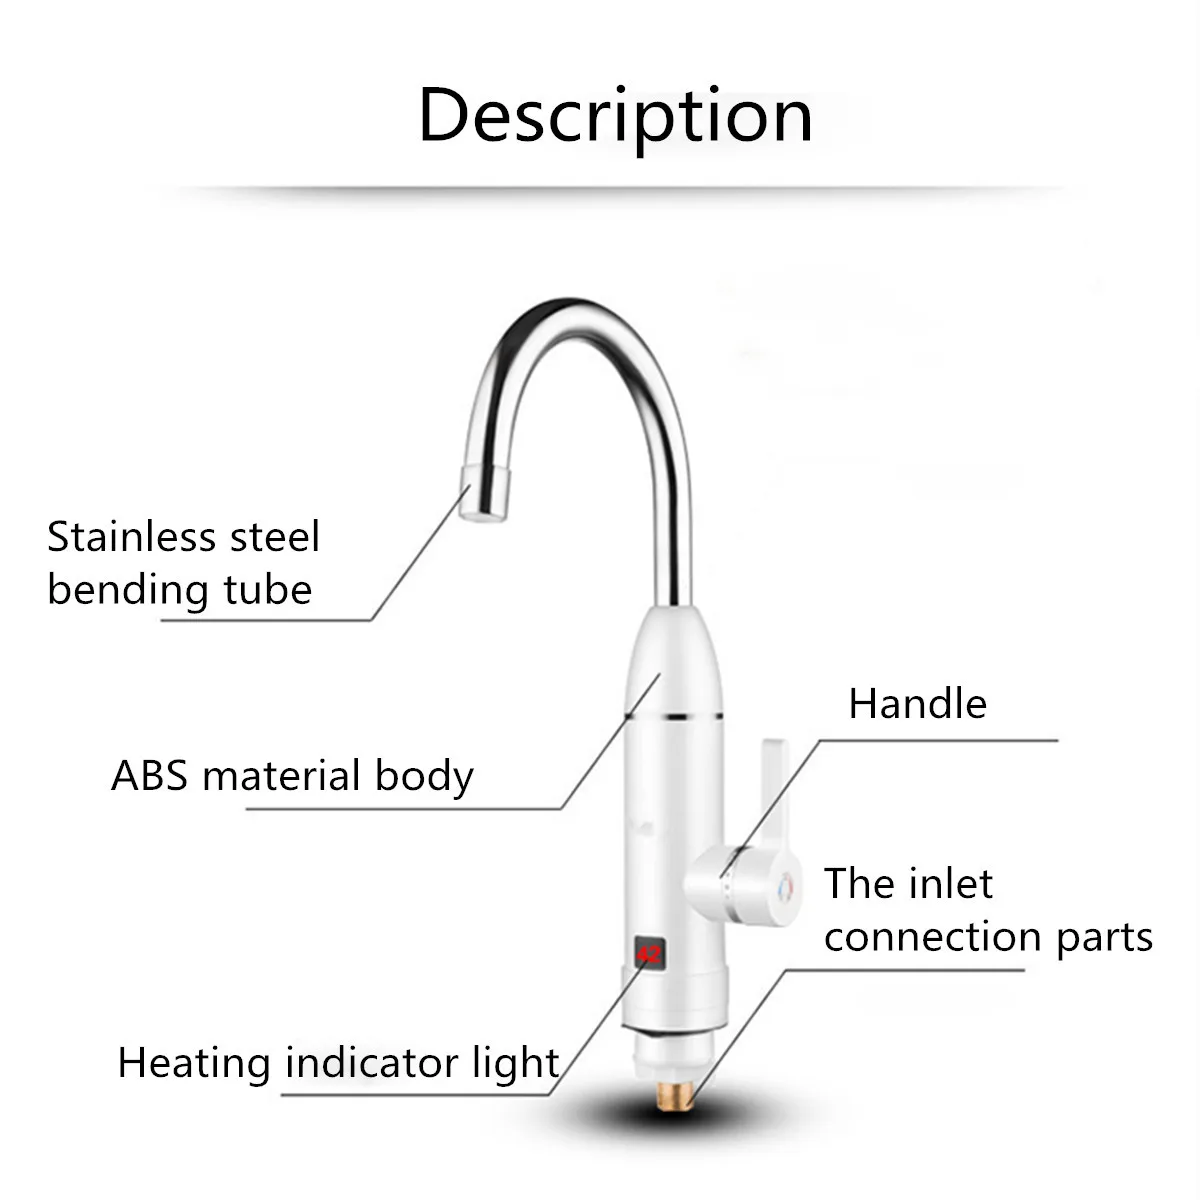 AU Plug Электрический кухонный водонагреватель кран мгновенный горячий Водонагреватель проточный водонагреватель с дисплеем температуры 220 В